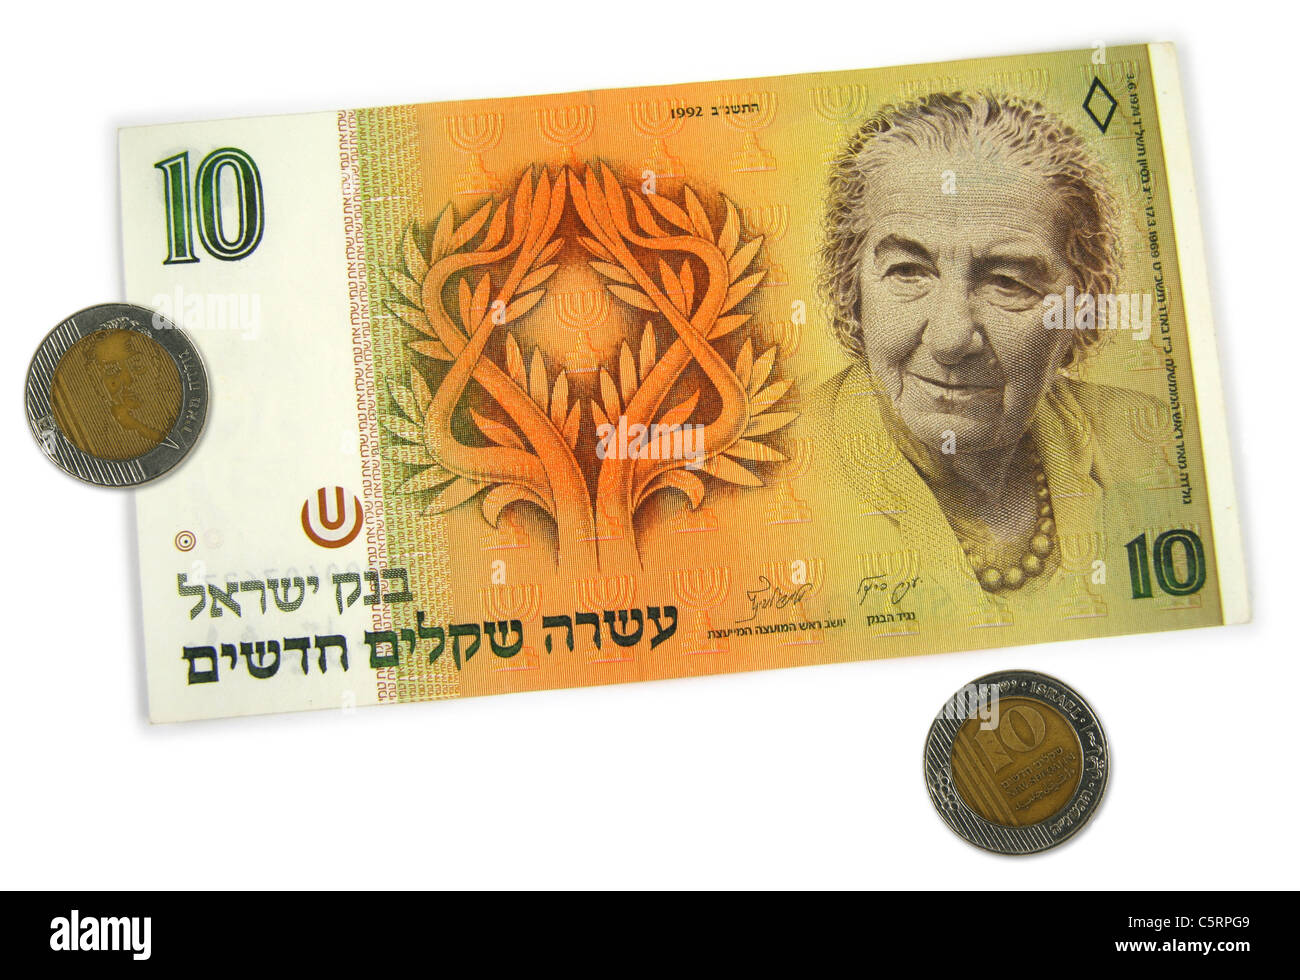 10 neue Sheqalim, Münzen und Papiergeld, abbildenden Golda Meir, der vierte Premierminister des Staates Israel. Stockfoto